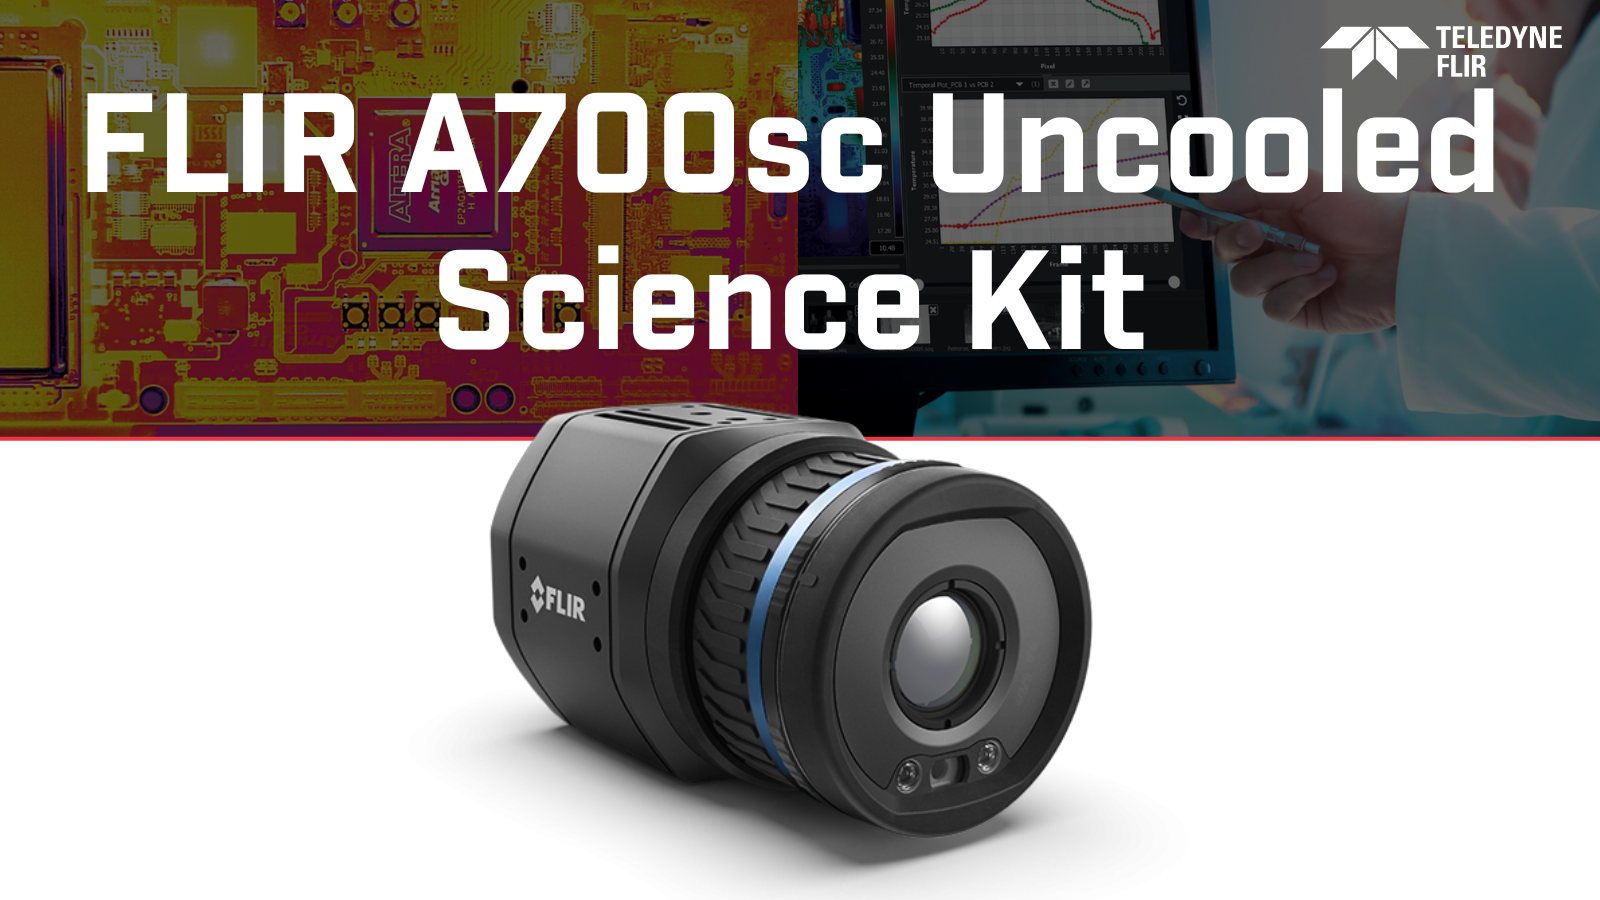 FLIR A700sc Series Science Kit